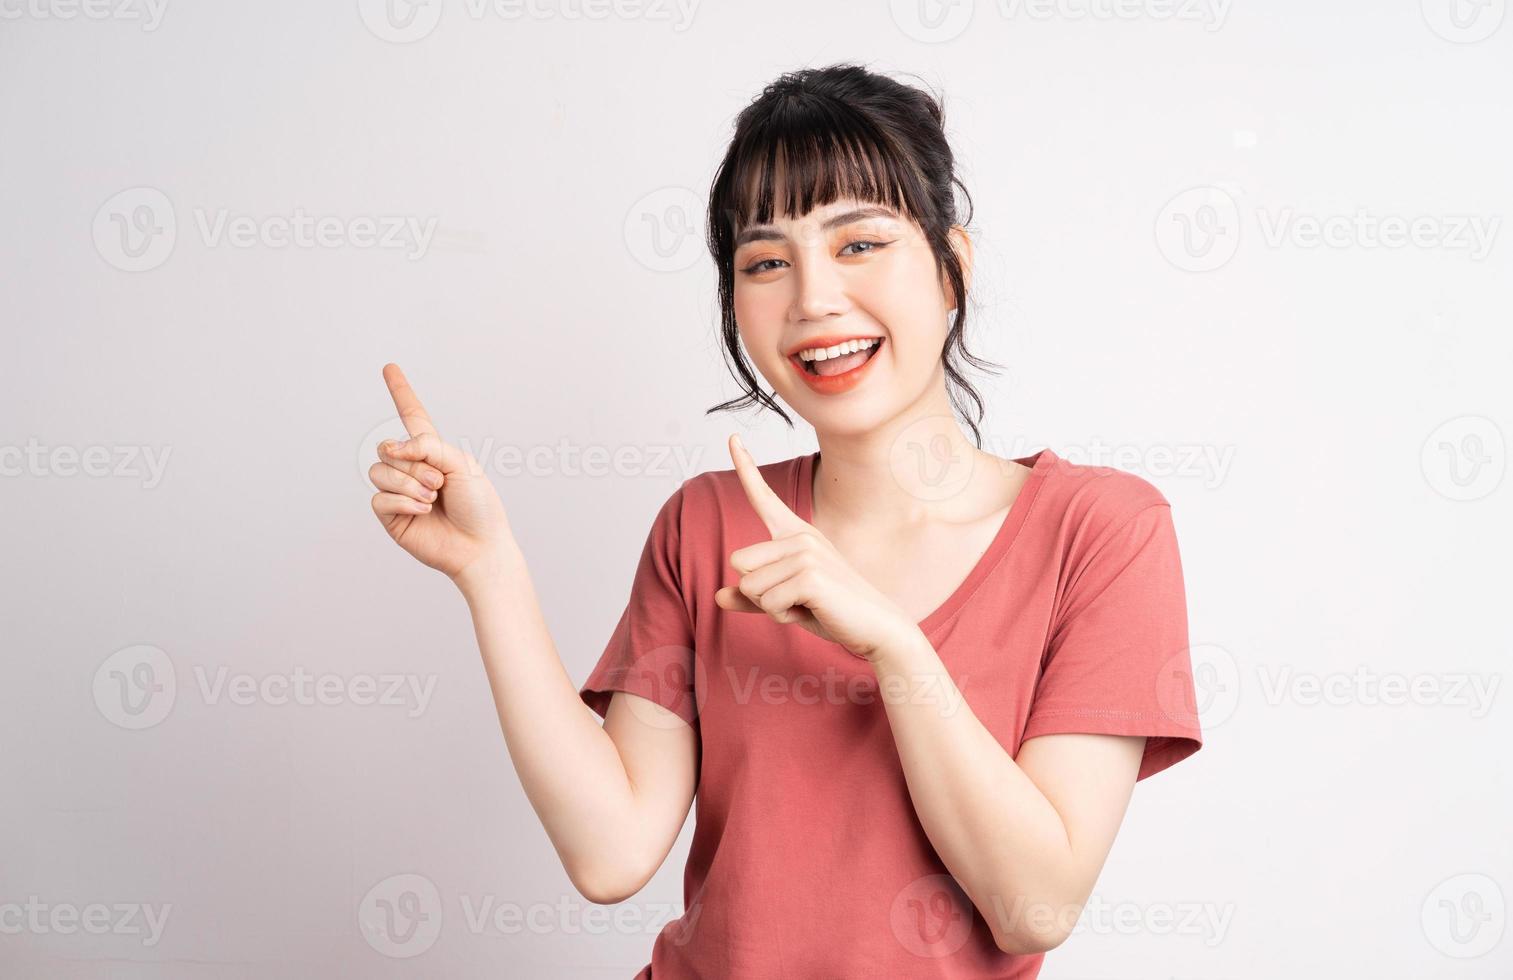 giovane donna asiatica in posa su sfondo bianco, usando il dito per indicare e mostrare, gesto della mano foto